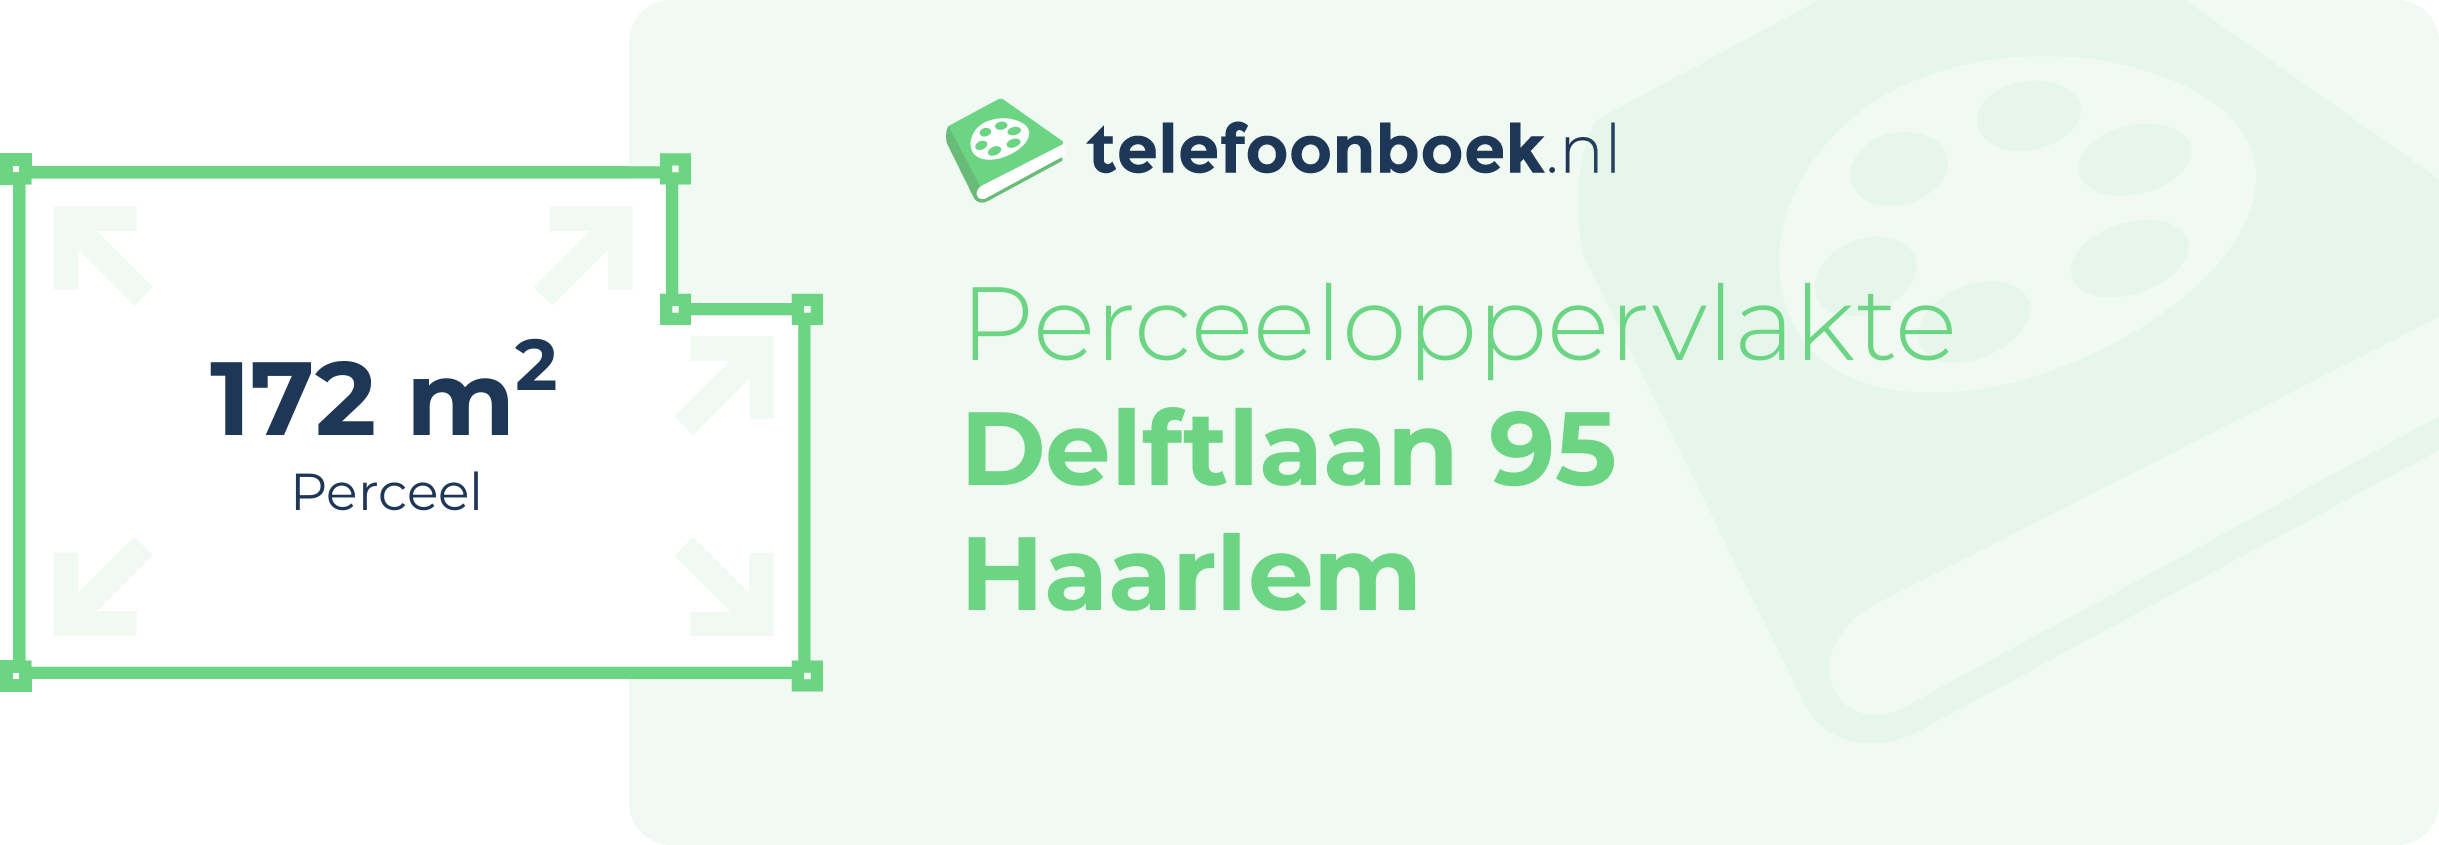 Perceeloppervlakte Delftlaan 95 Haarlem